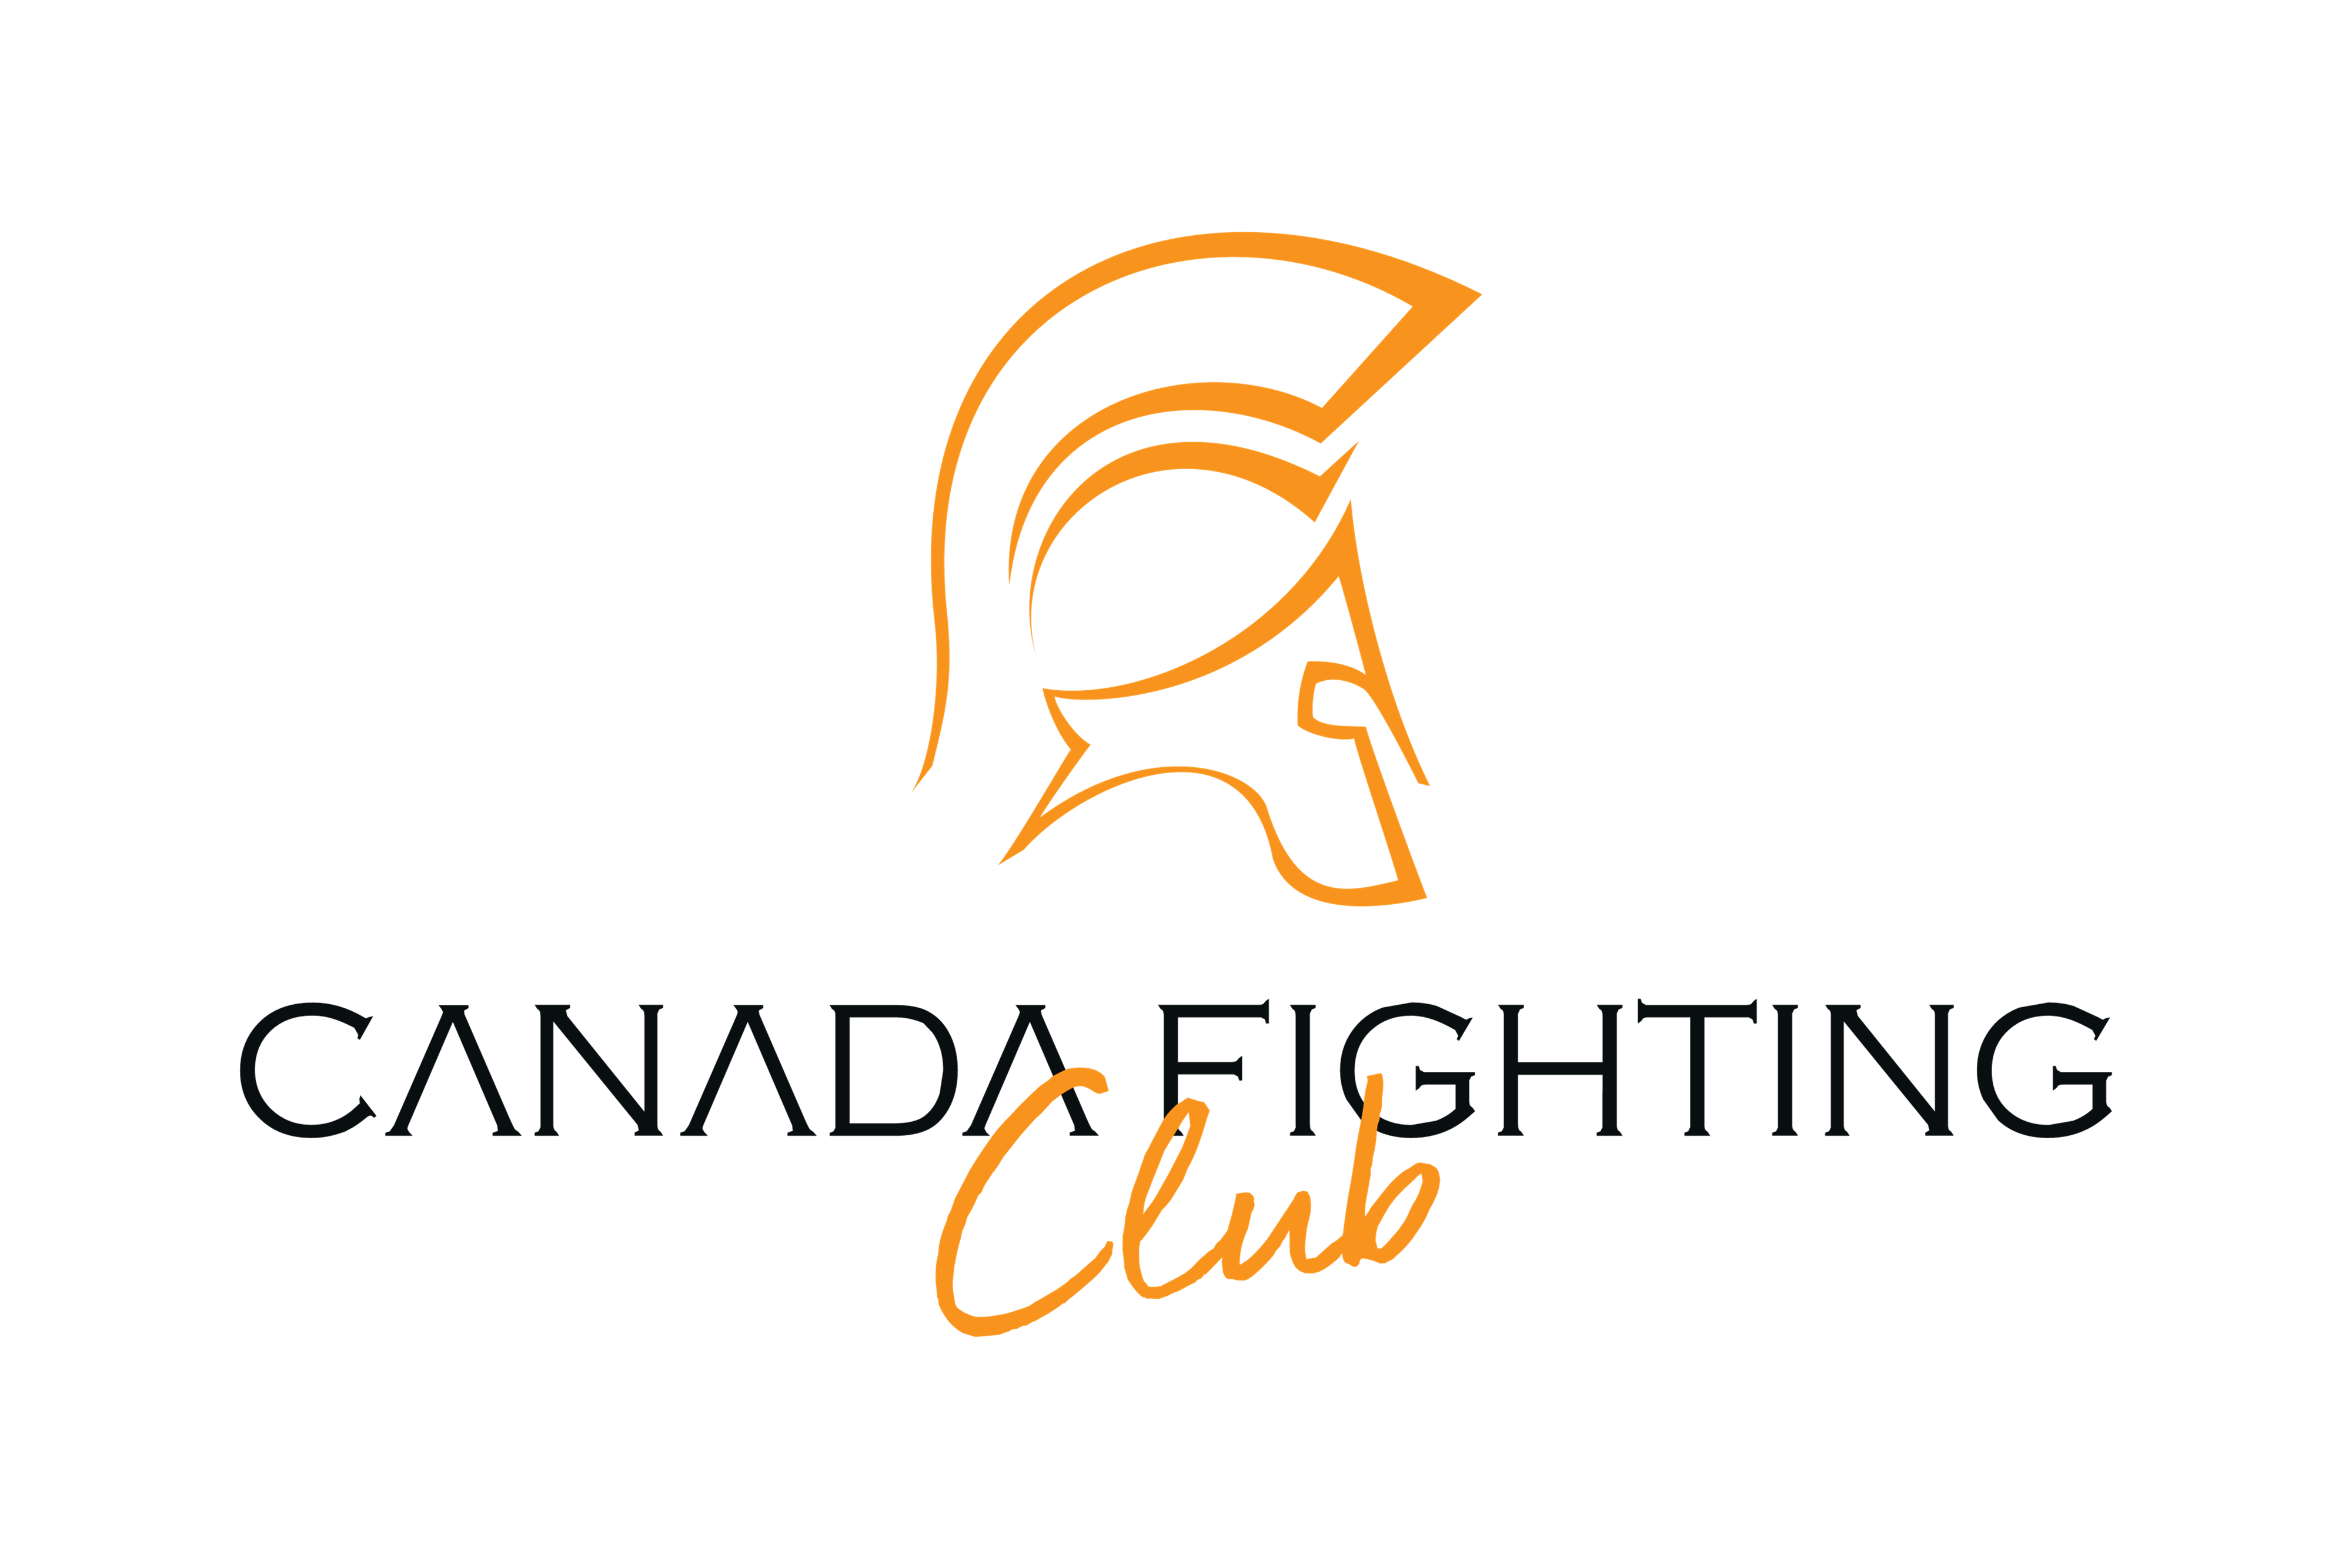 Canada Fighting Club Annonce un Gala de Boxe Révolution au Bain Mathieu